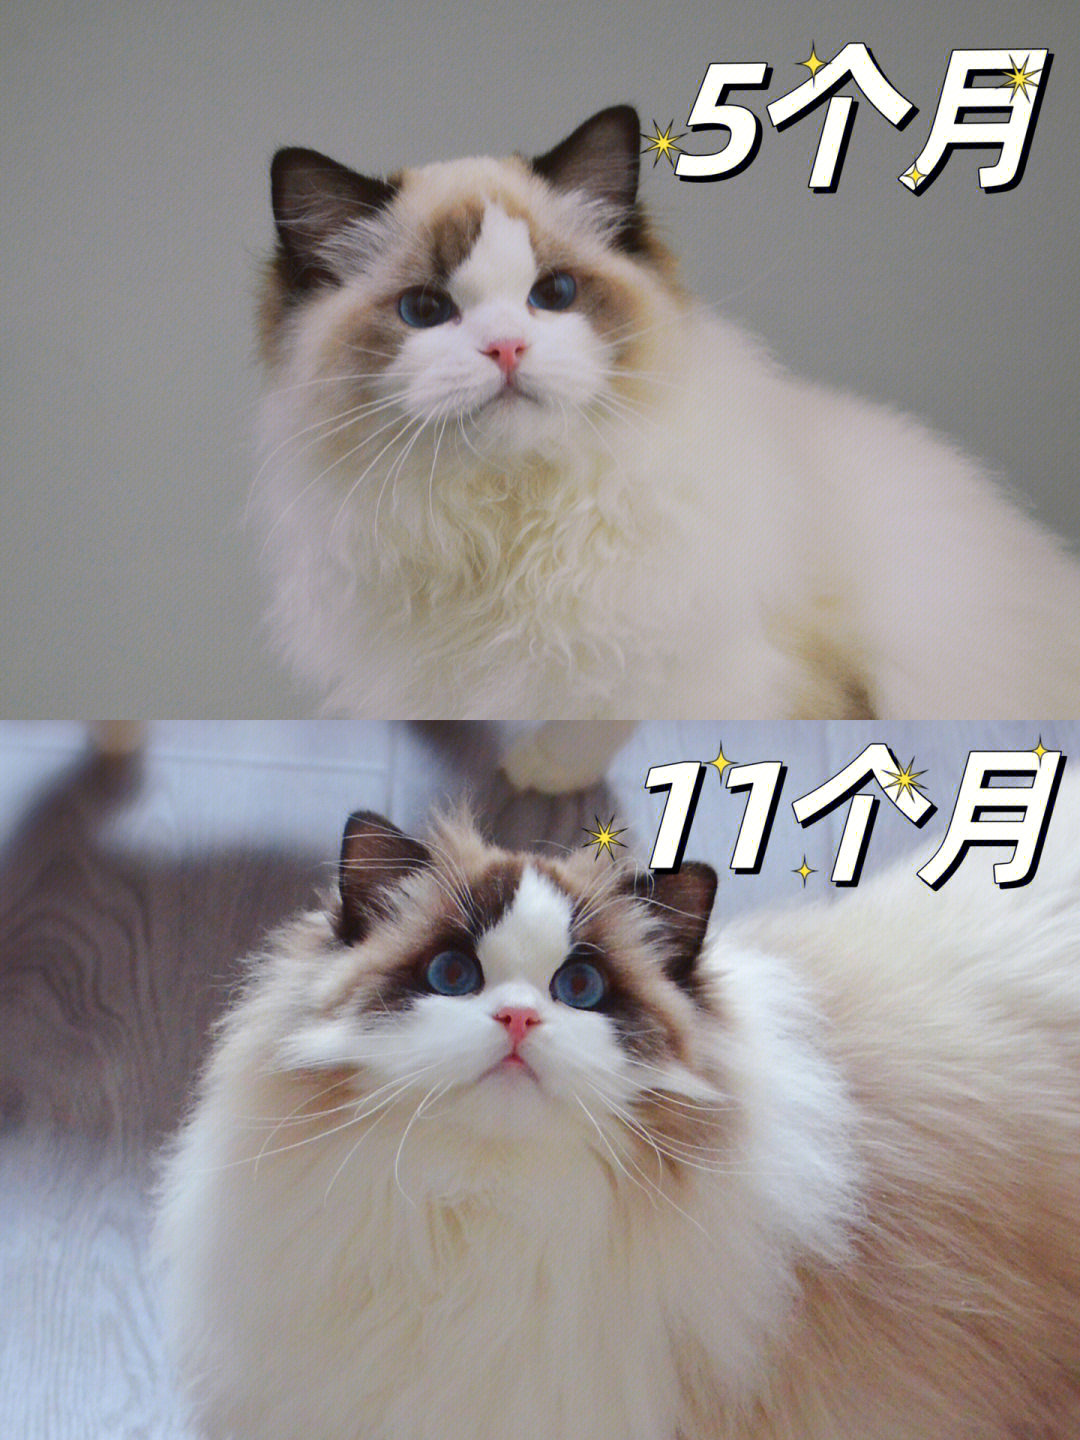 布偶猫长大后对比照片图片